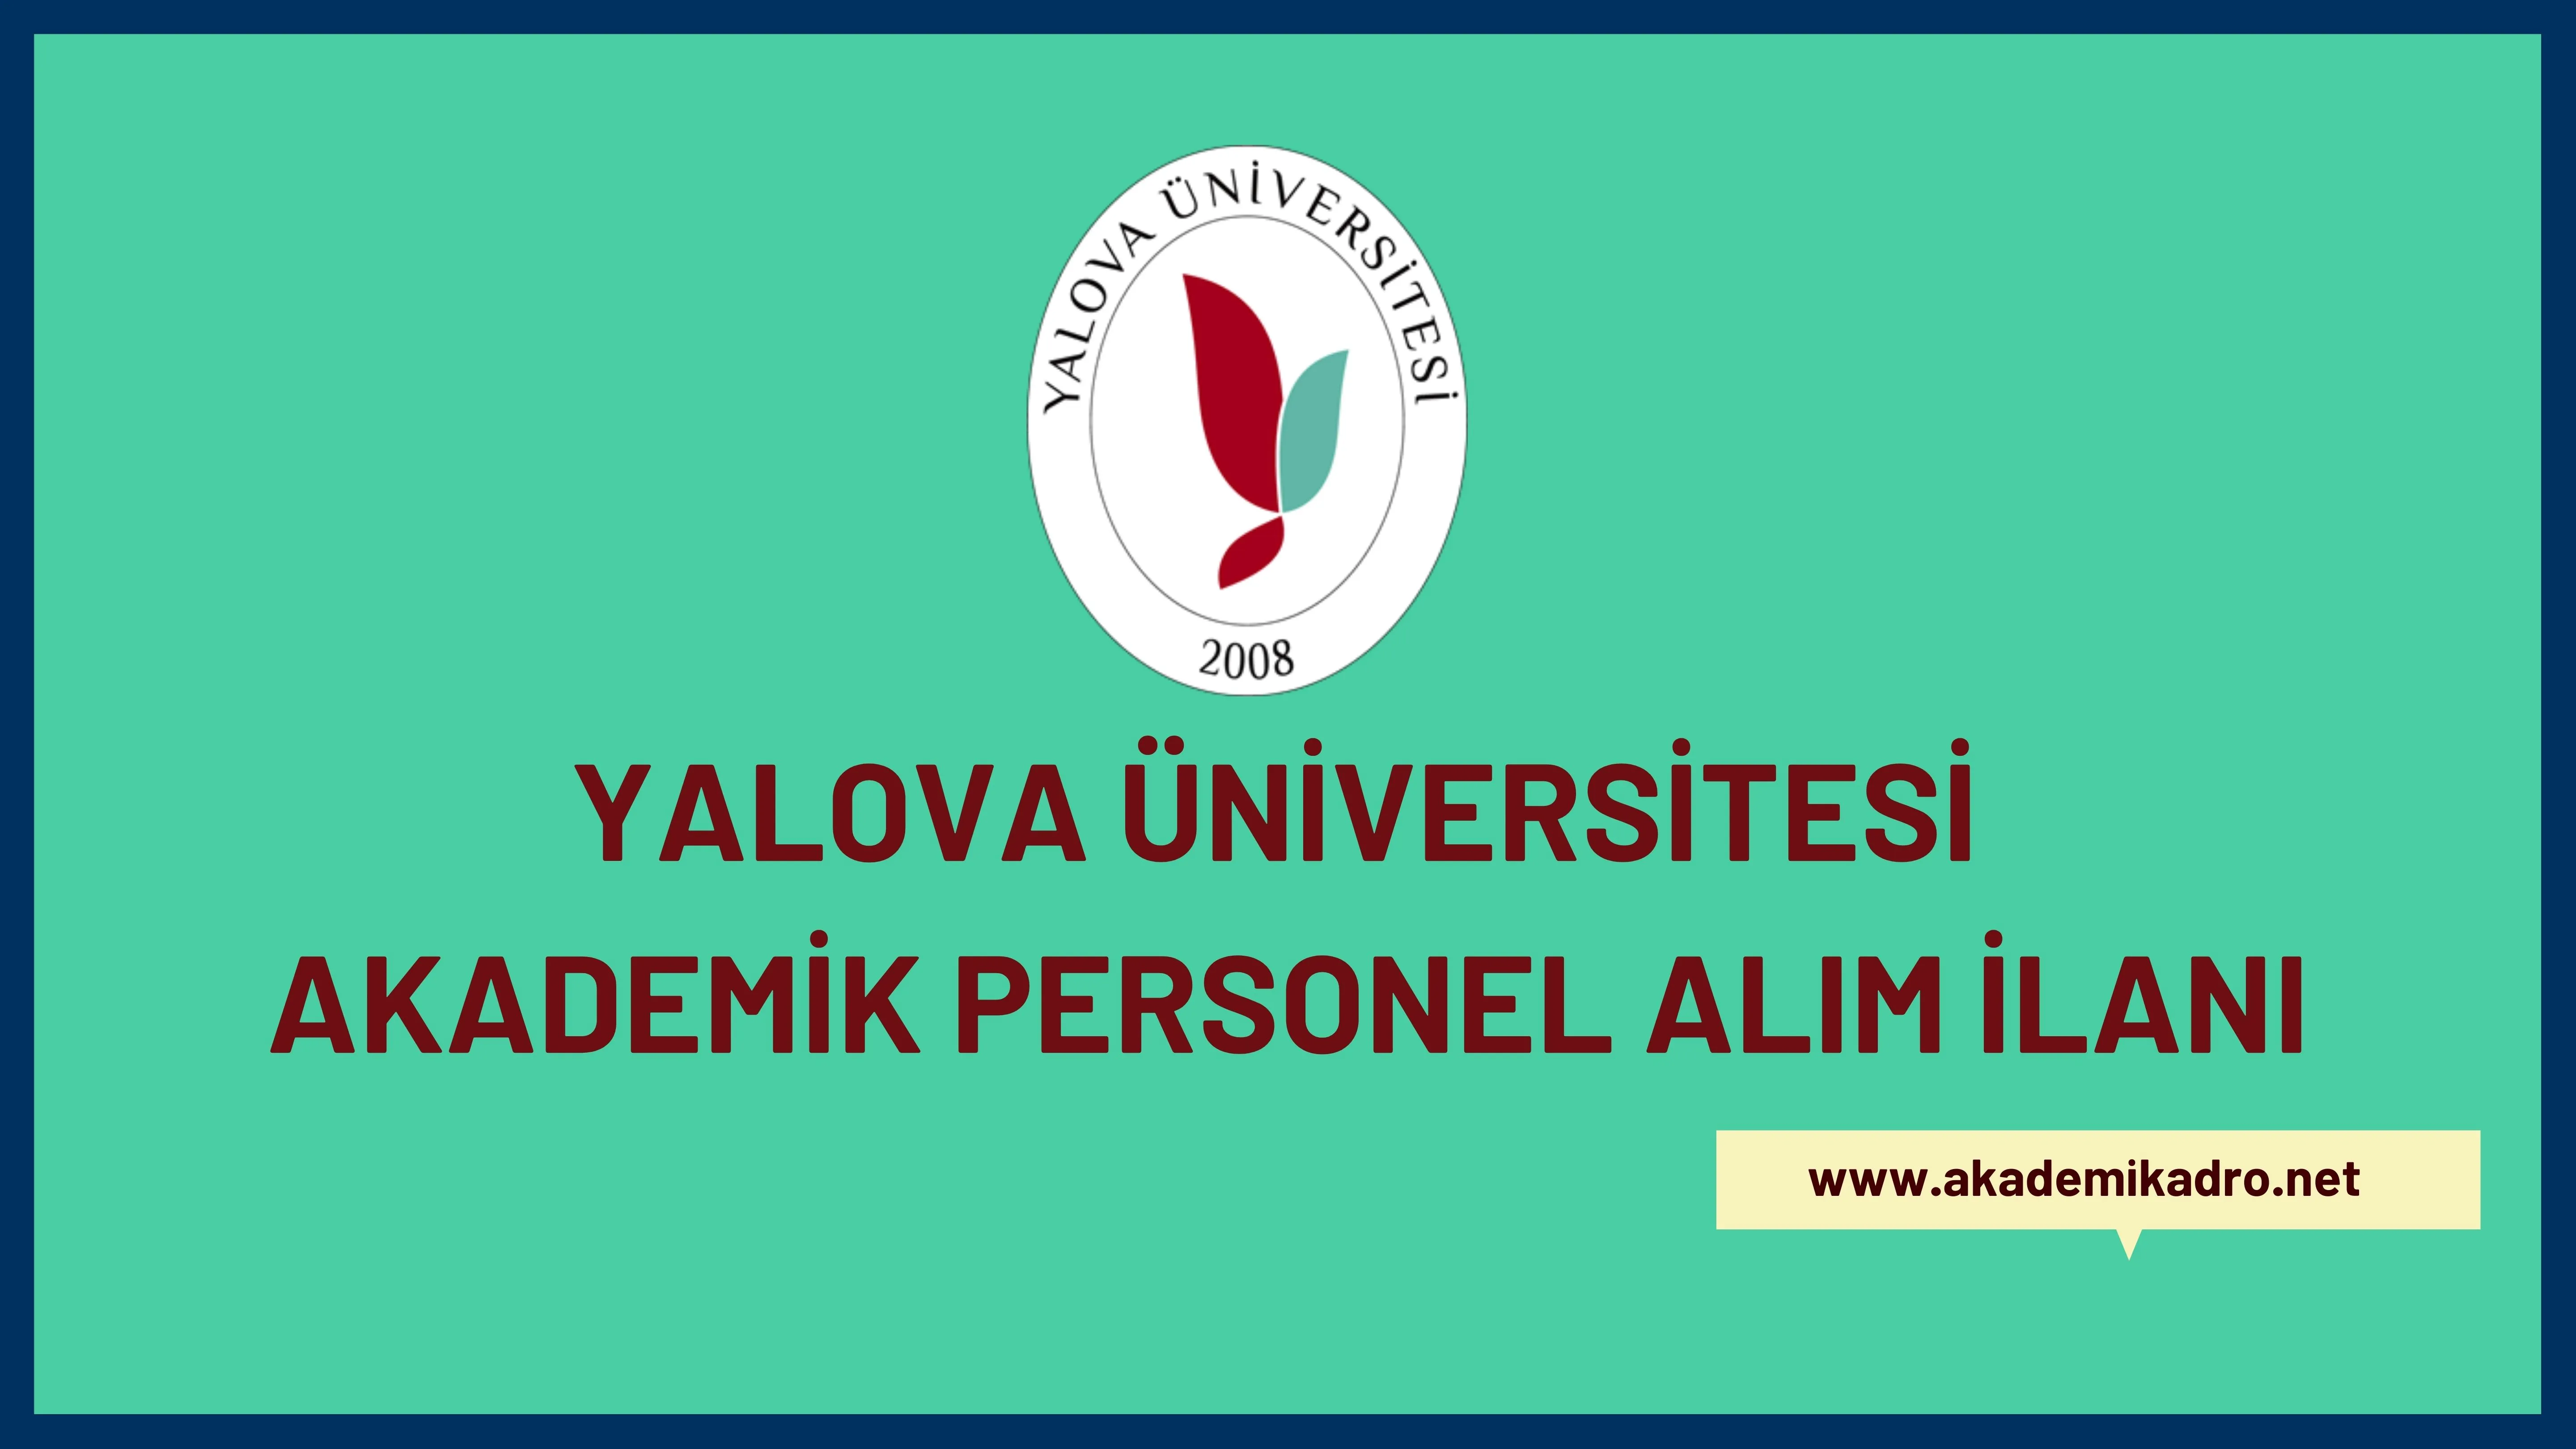 Yalova Üniversitesi birçok alandan 29 akademik personel alacak.